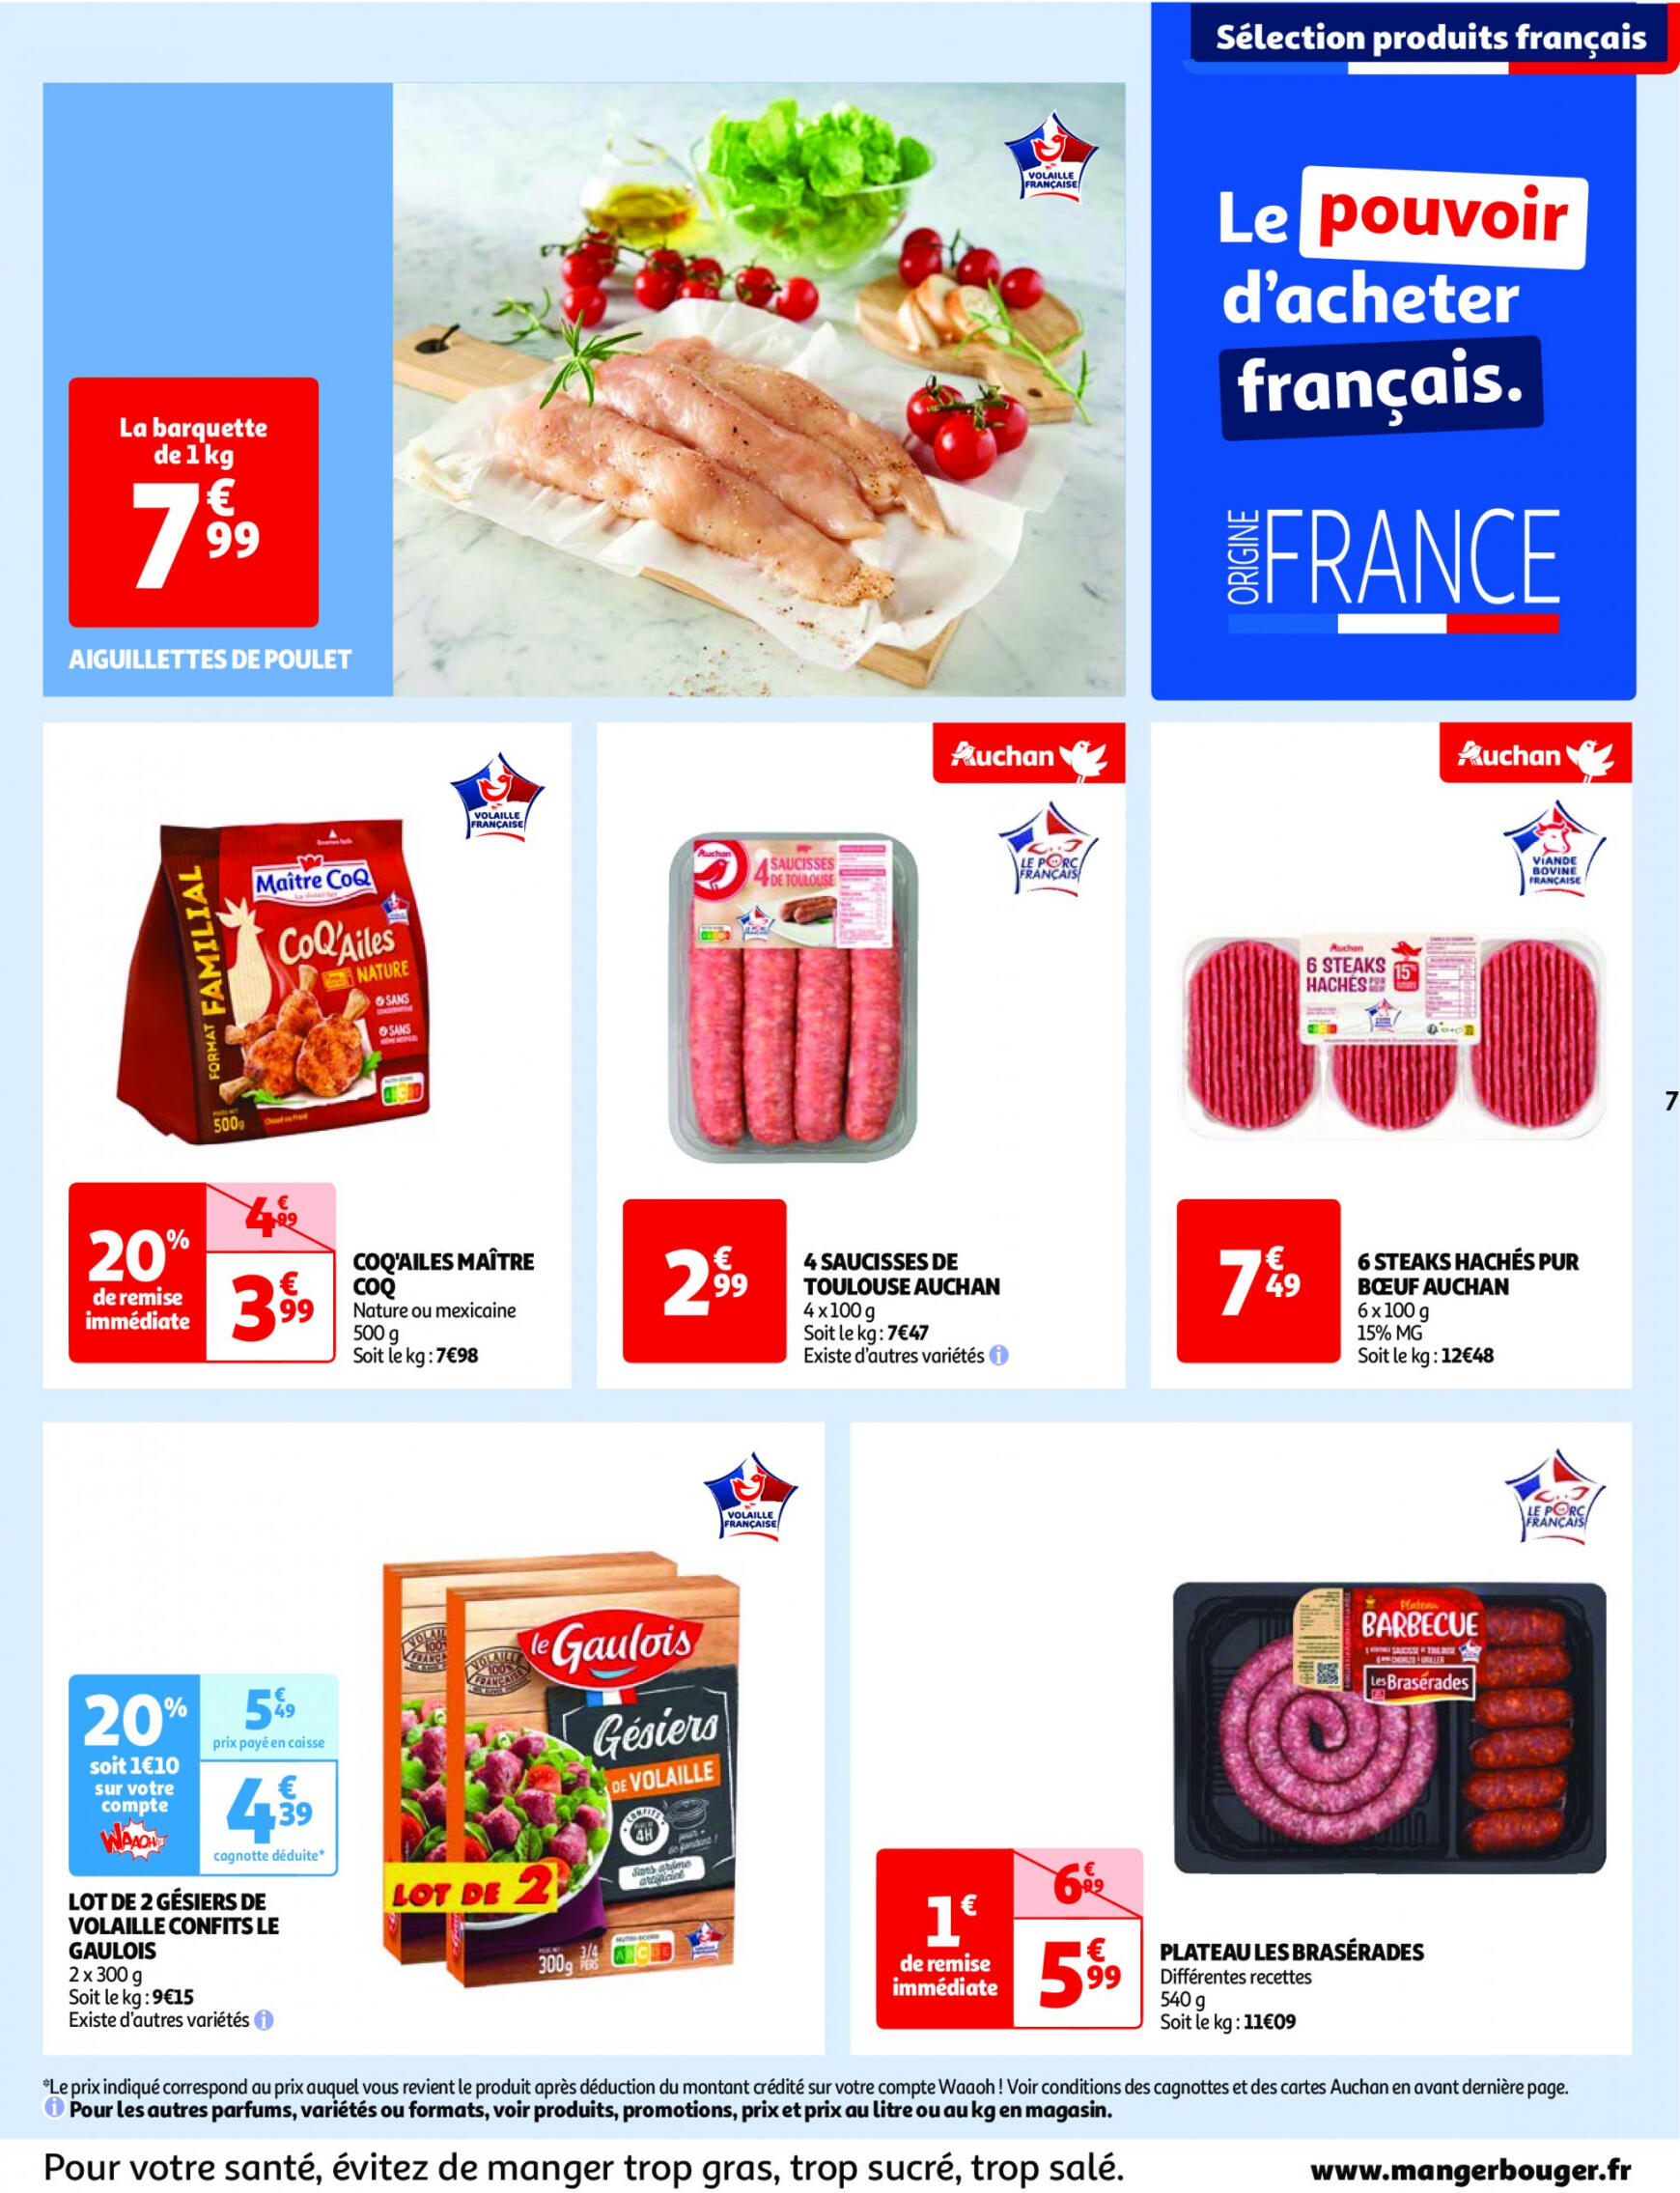 auchan - Auchan - Nos surgelés ont tout bon folder huidig 14.05. - 21.05. - page: 7